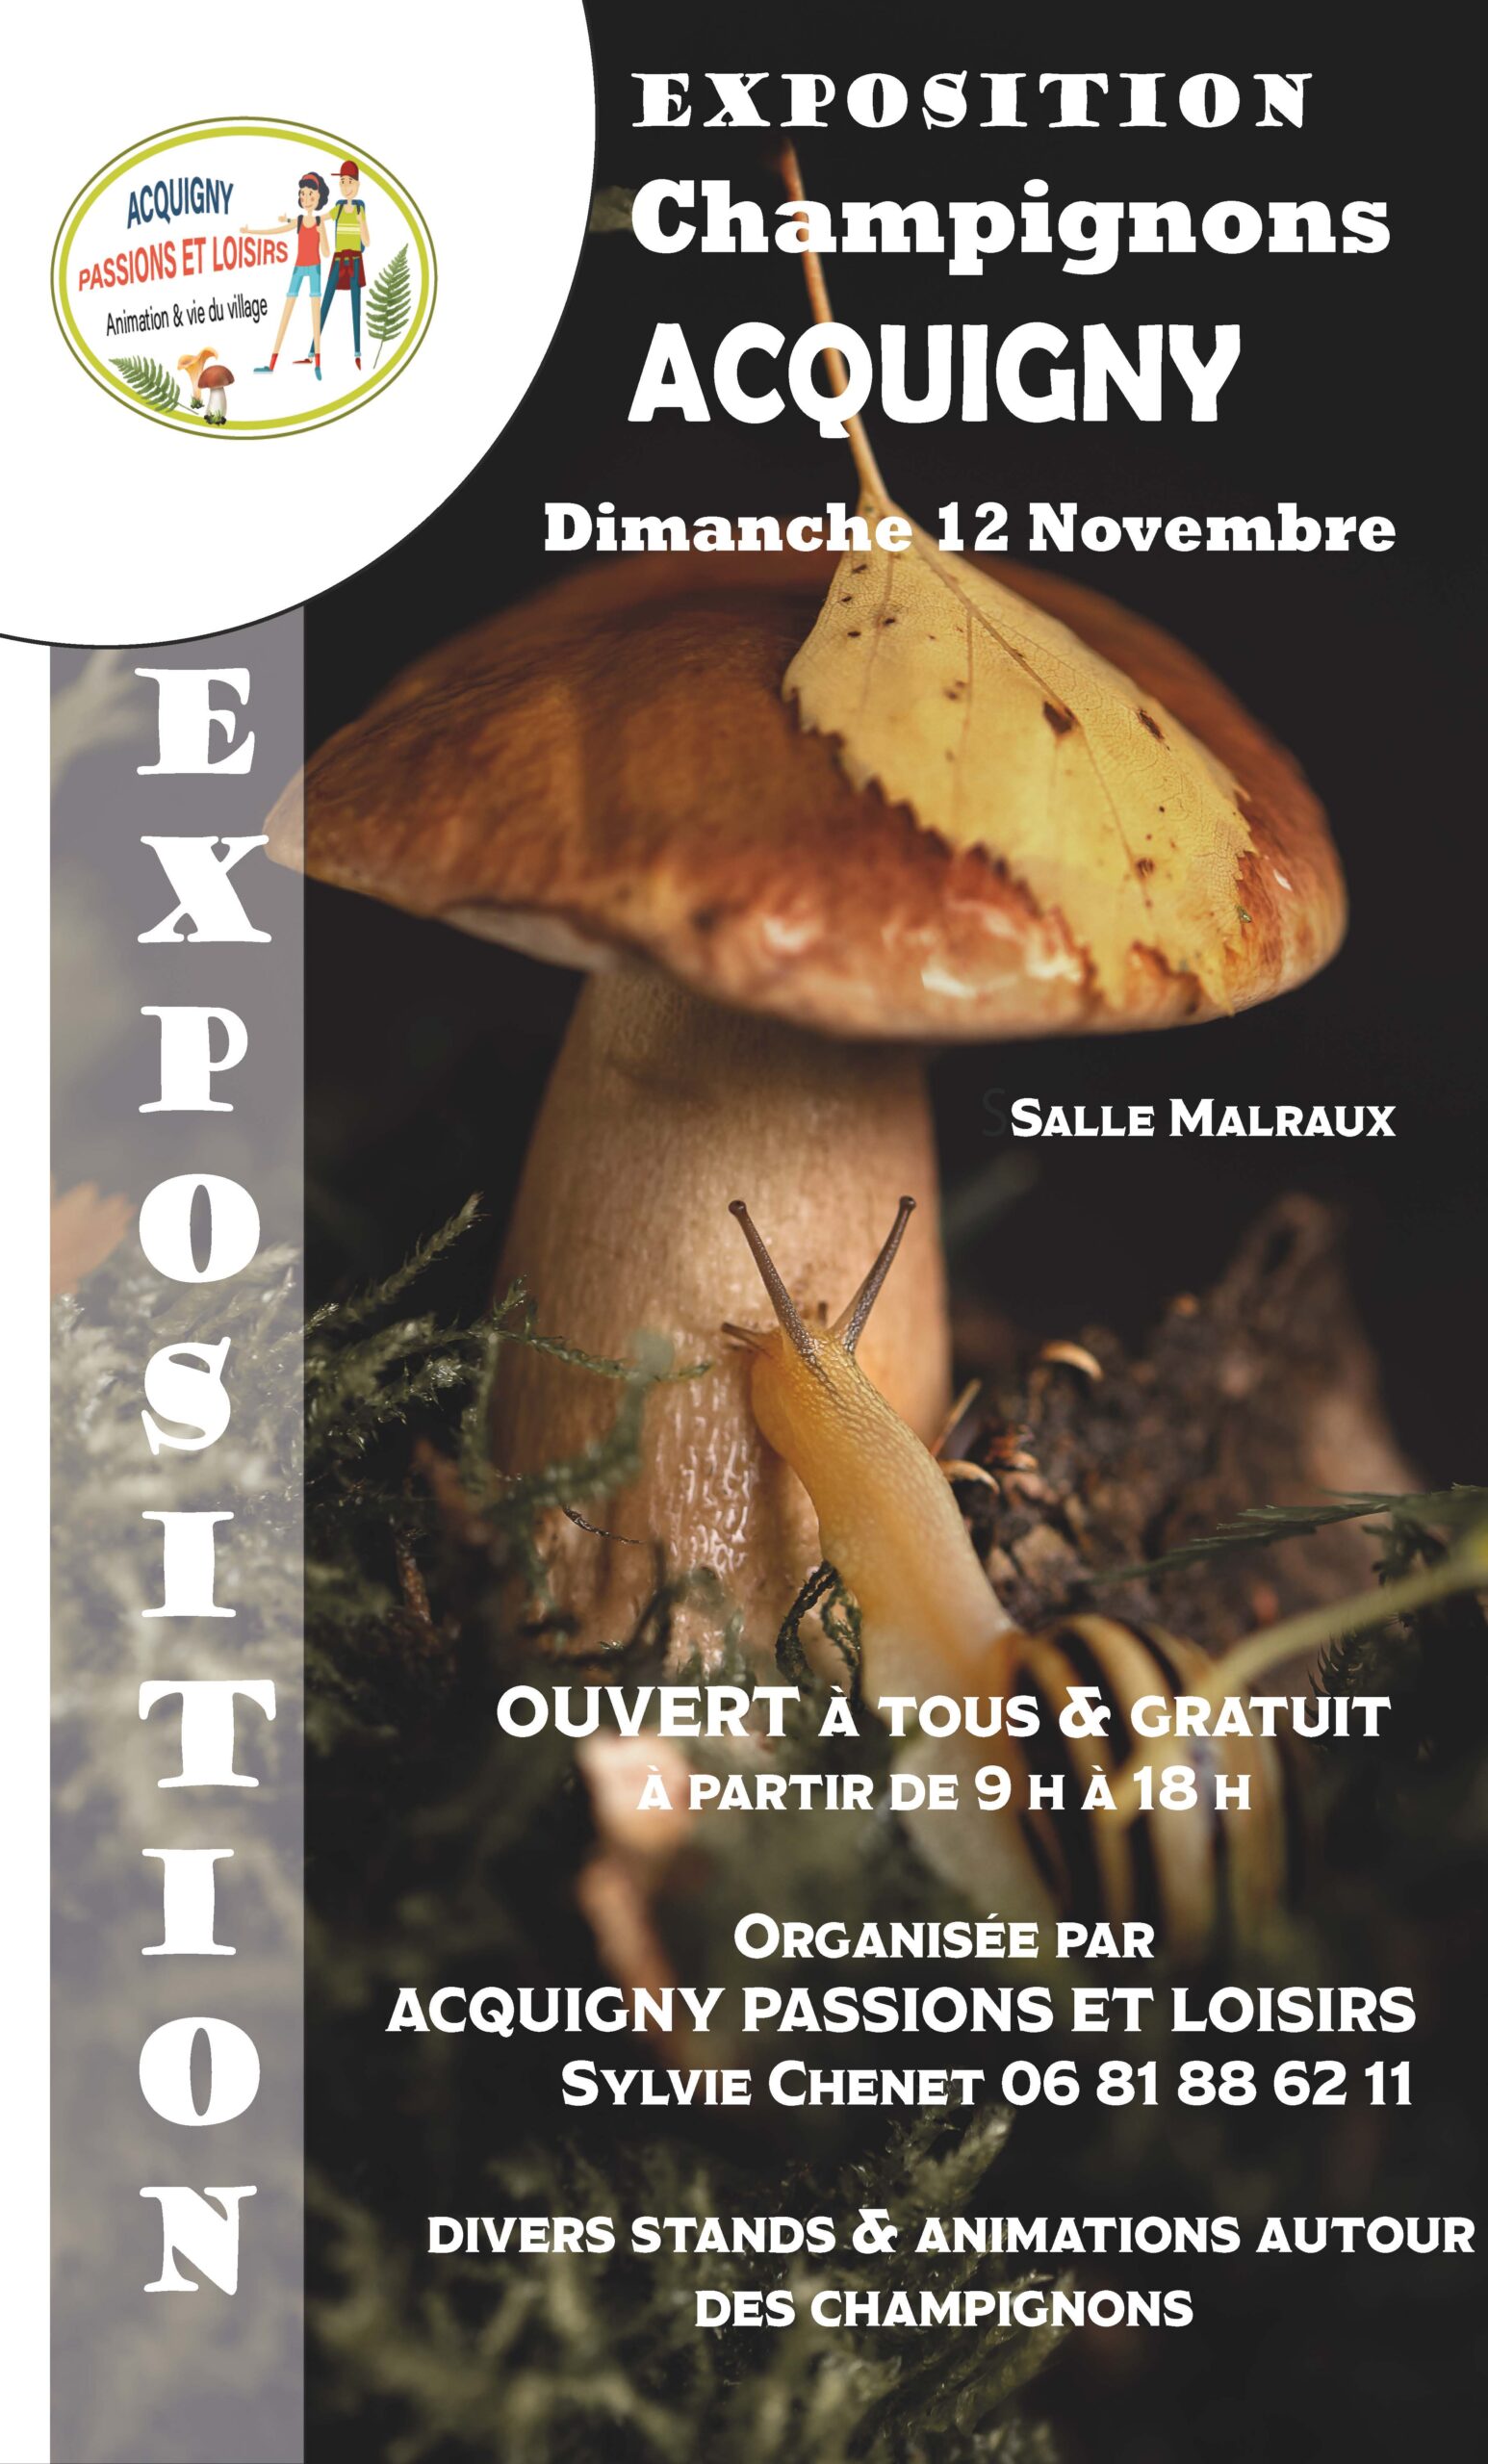 6 ème expositions de champignons acquigny